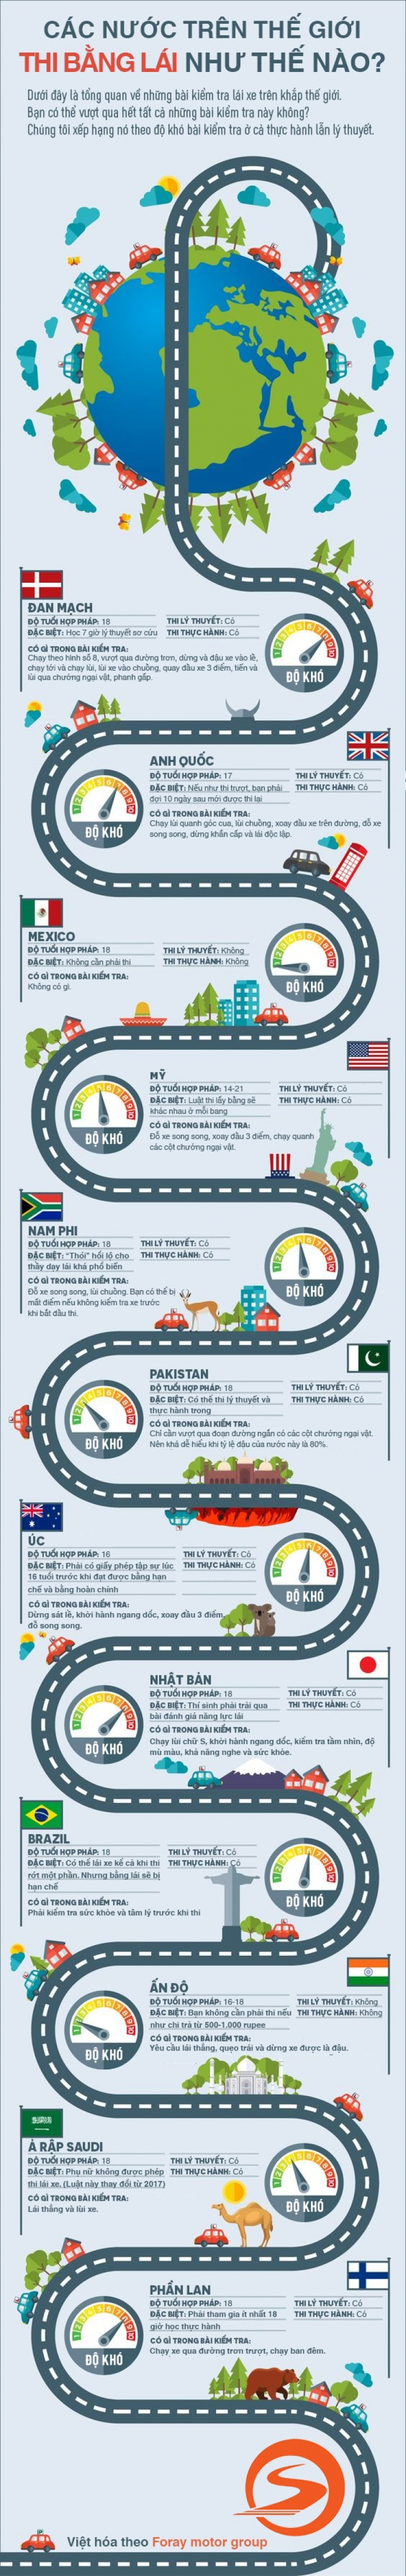 [Infographic] Các nước trên thế giới thi bằng lái như thế nào?